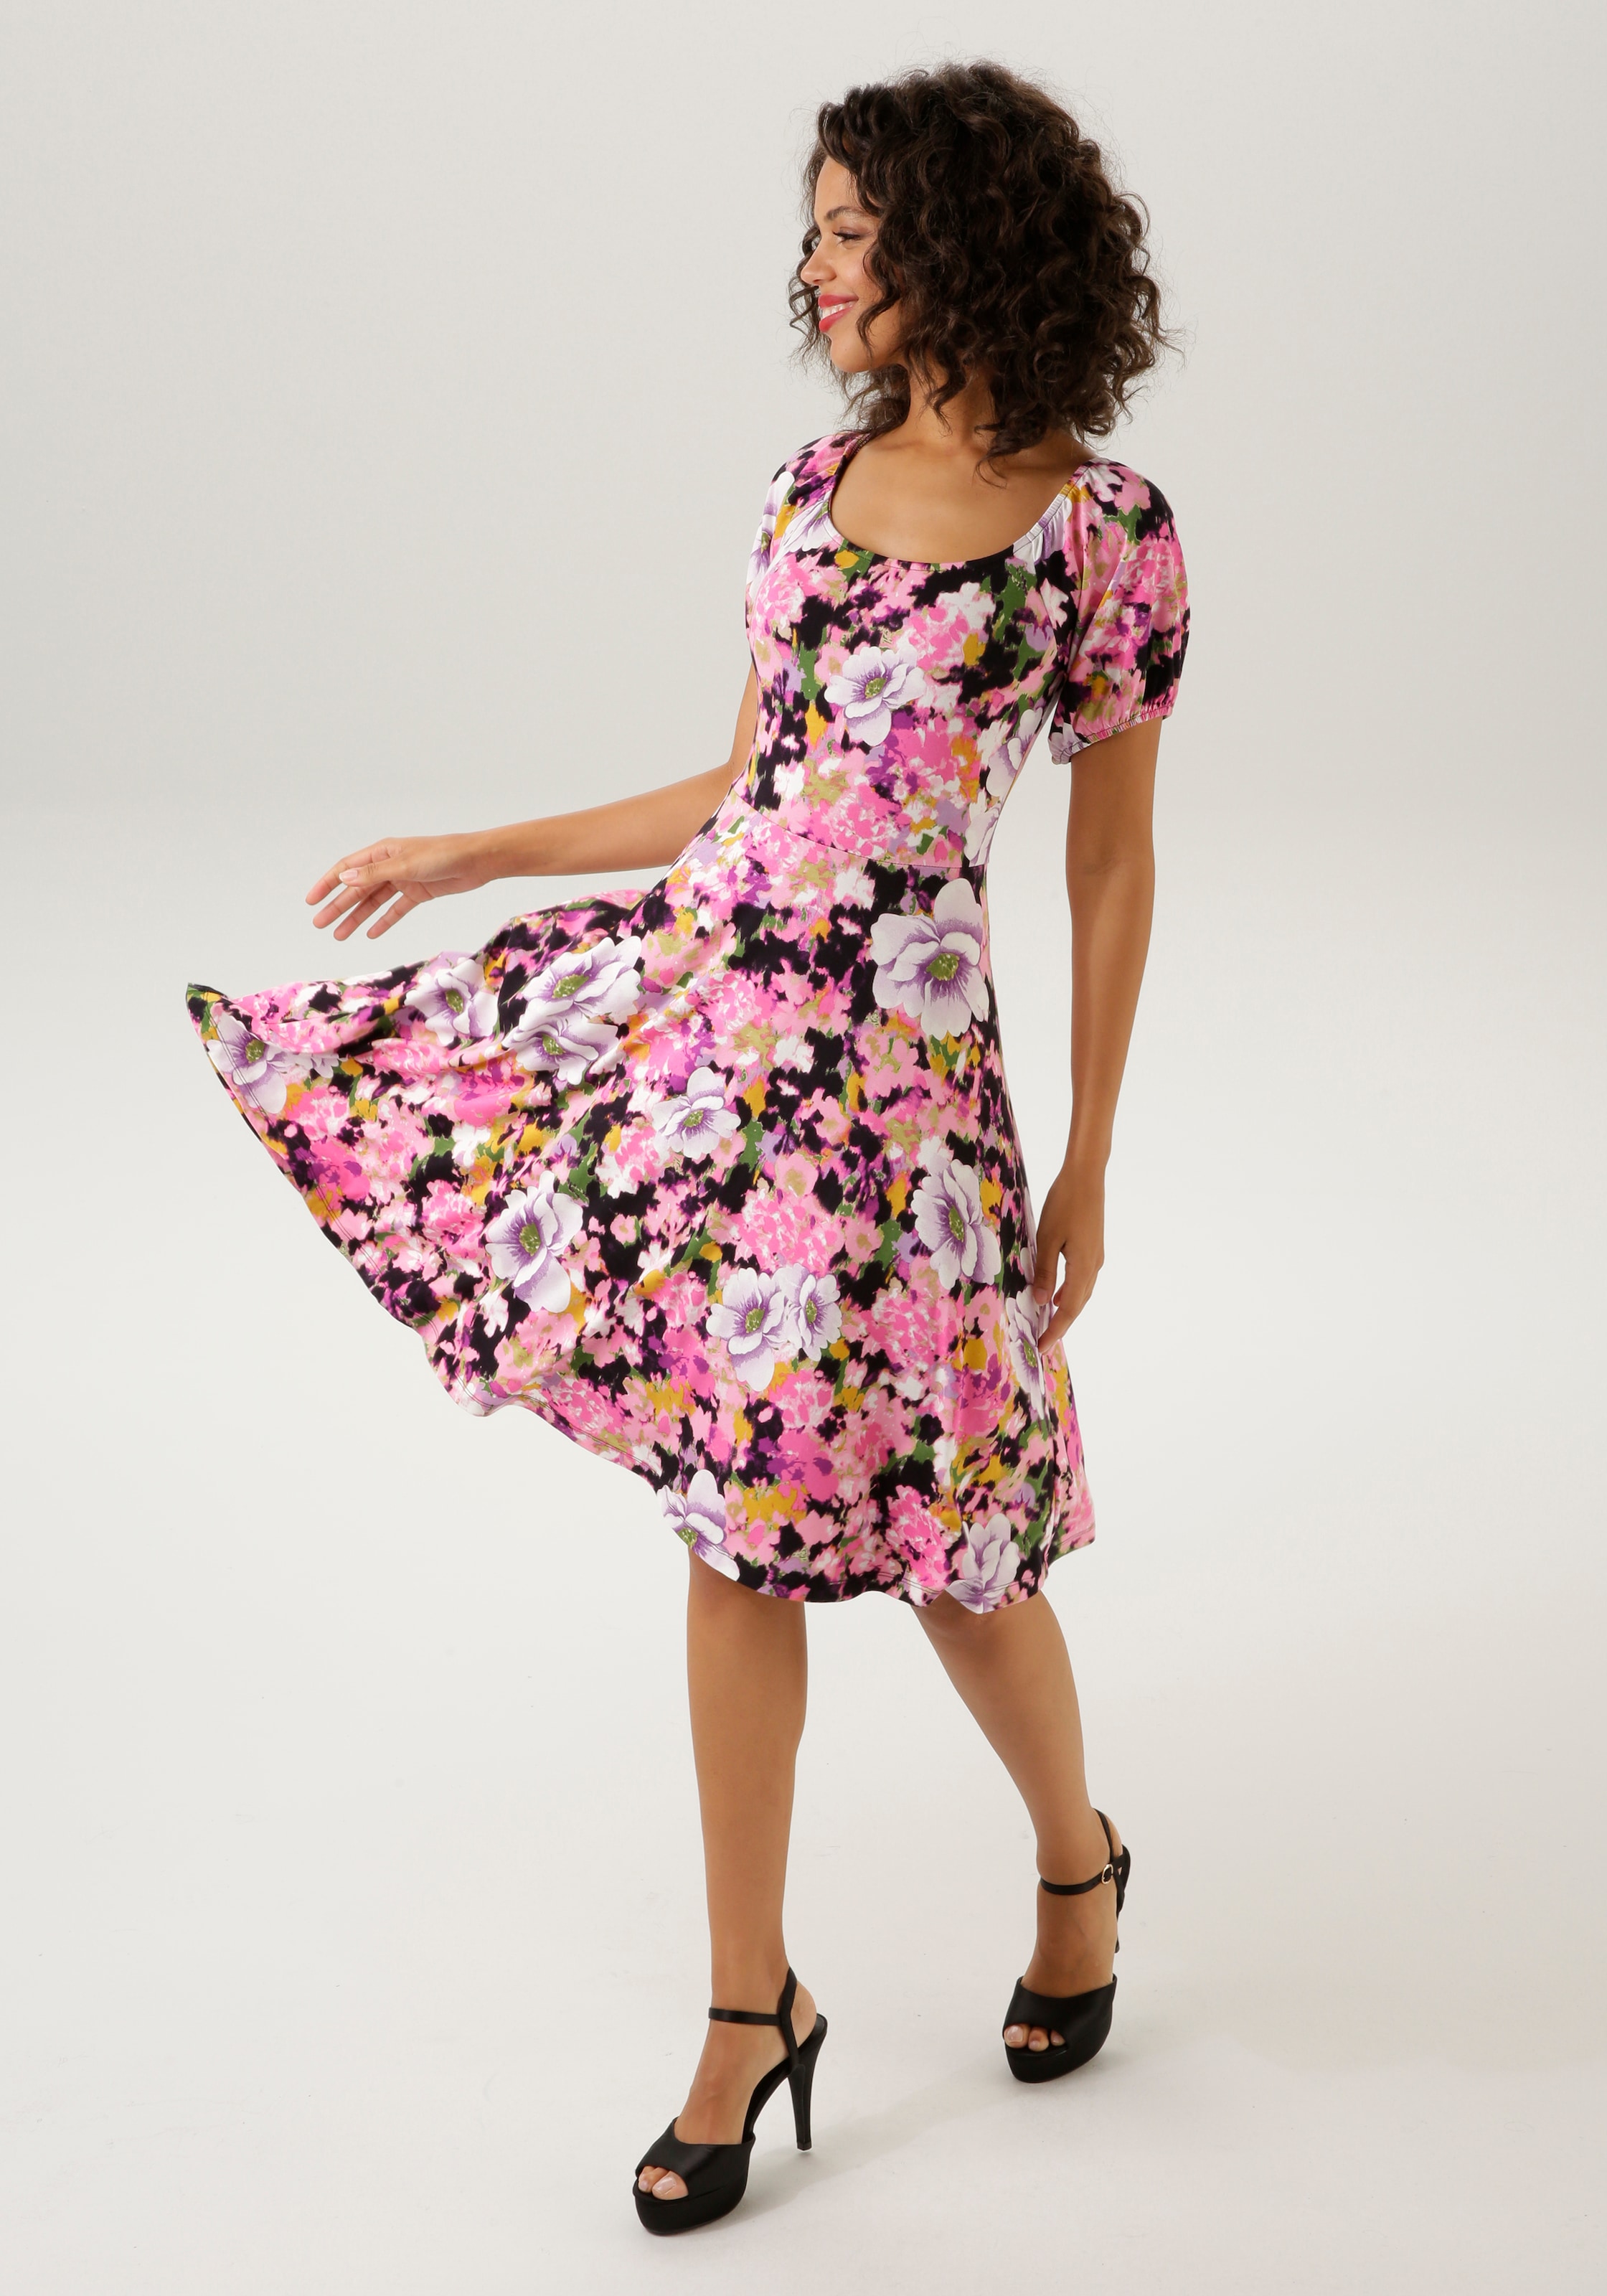 CASUAL mit - ein OTTO KOLLEKTION NEUE Aniston Online Unikat im - farbenfrohem Shop jedes Blumendruck Sommerkleid, Teil